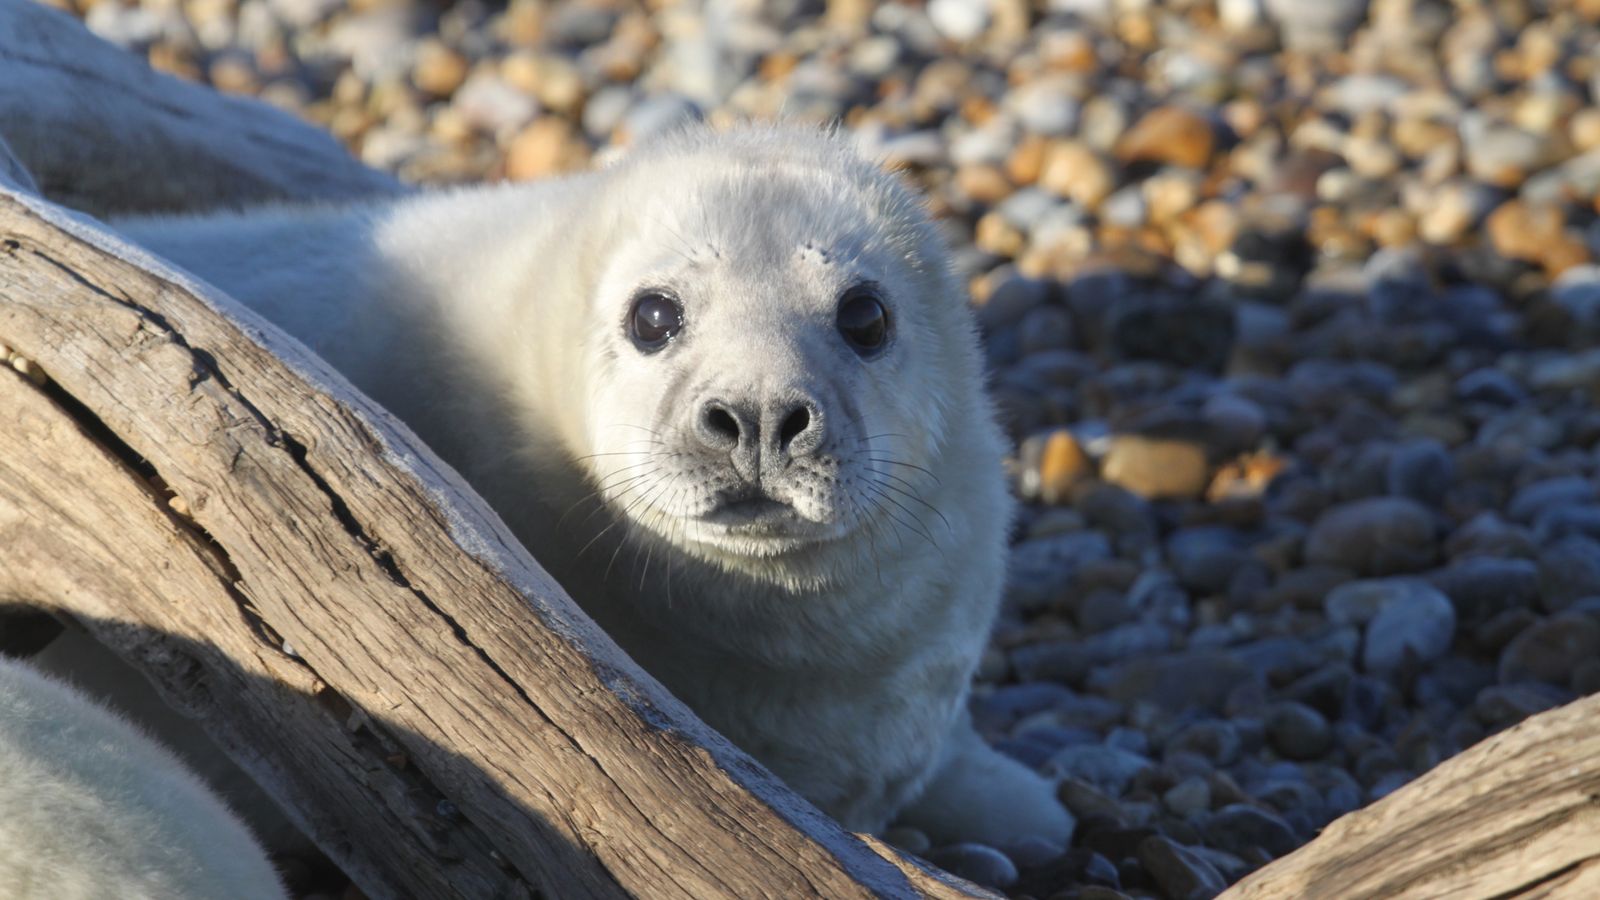 Мястото за тестване на оръжия от Студената война е превзето от колония сиви тюлени